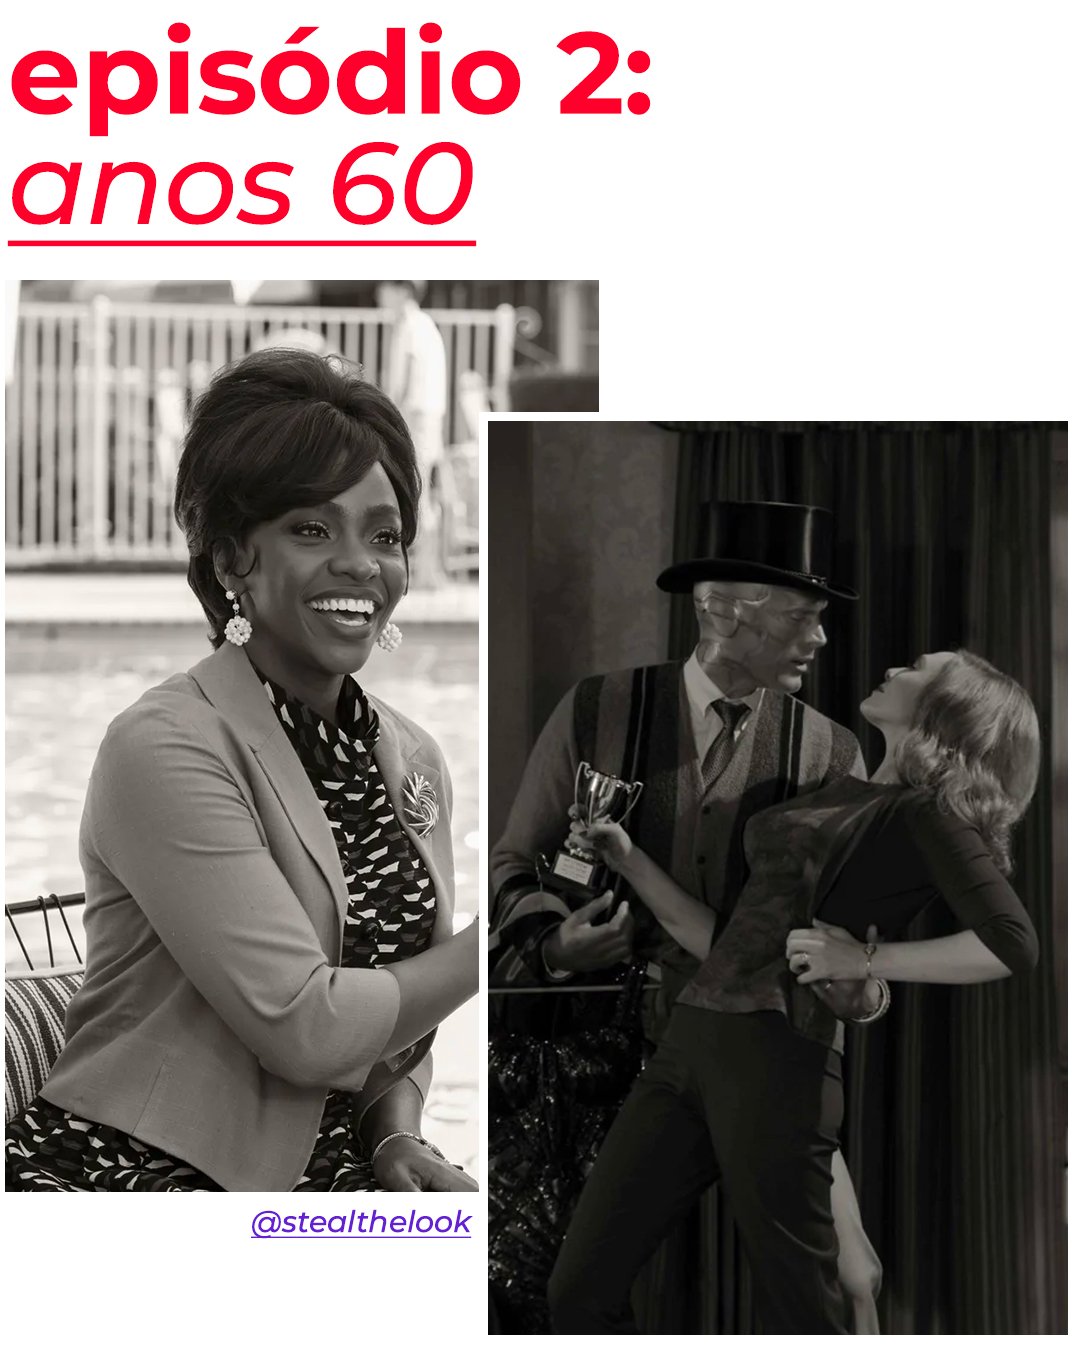 It girls - Anos 60 - Wandavision - Verão - Em casa - https://stealthelook.com.br